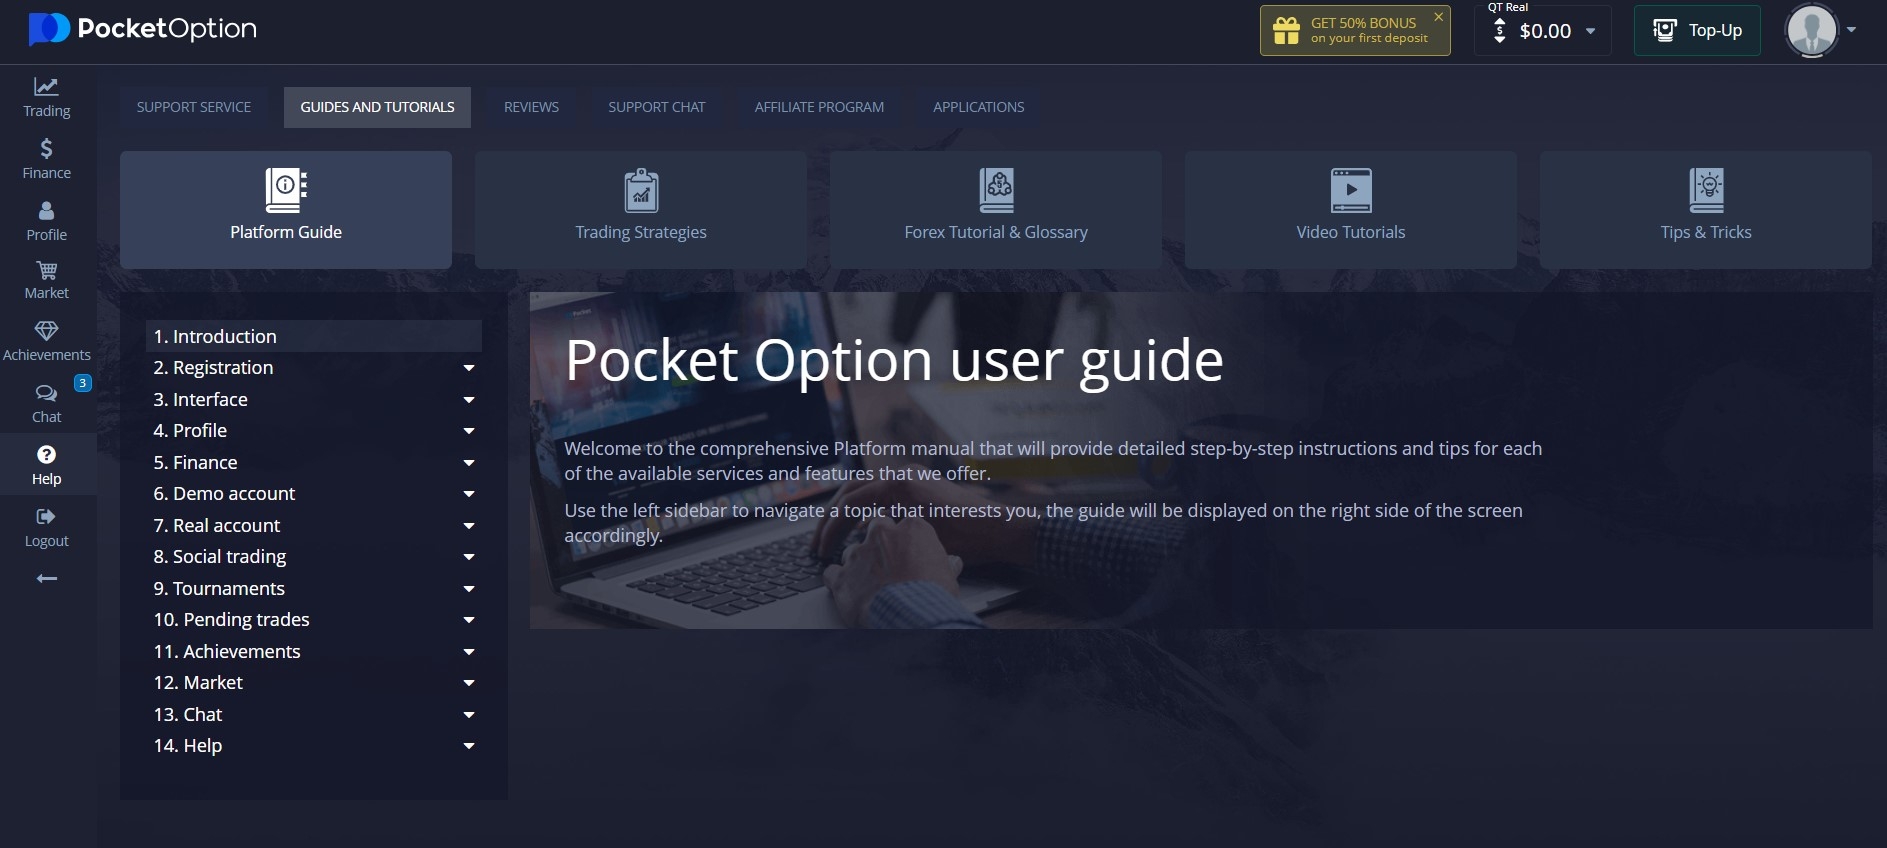 Pocket Option user guide